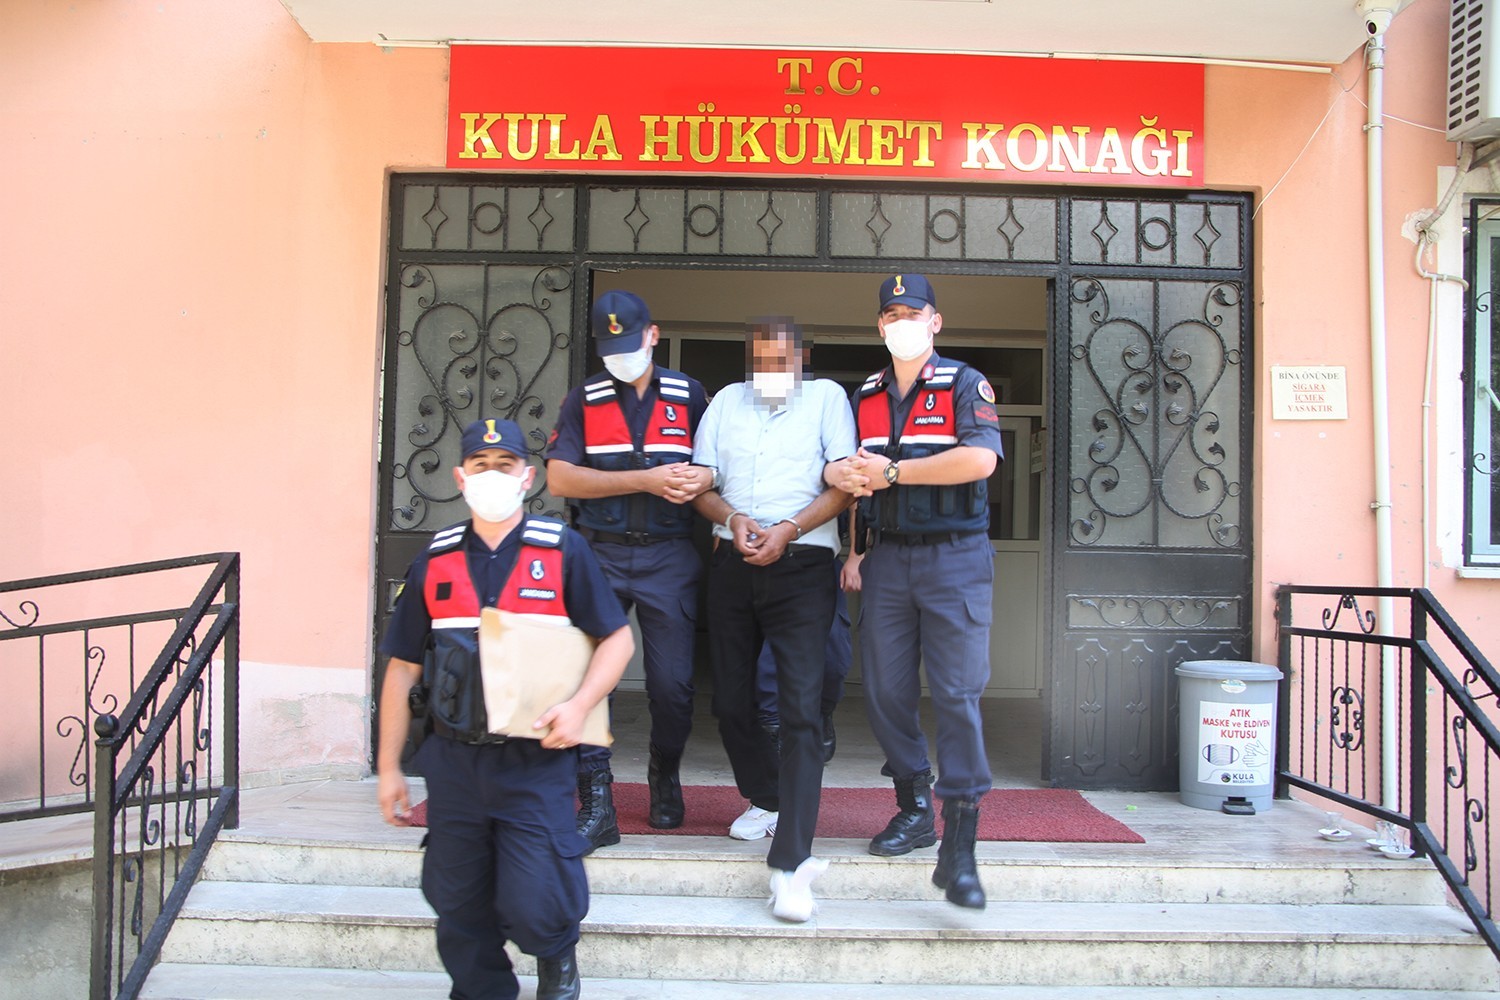 15 ayrı suç kaydıyla Kula’da yakalanan şüpheli tutuklandı